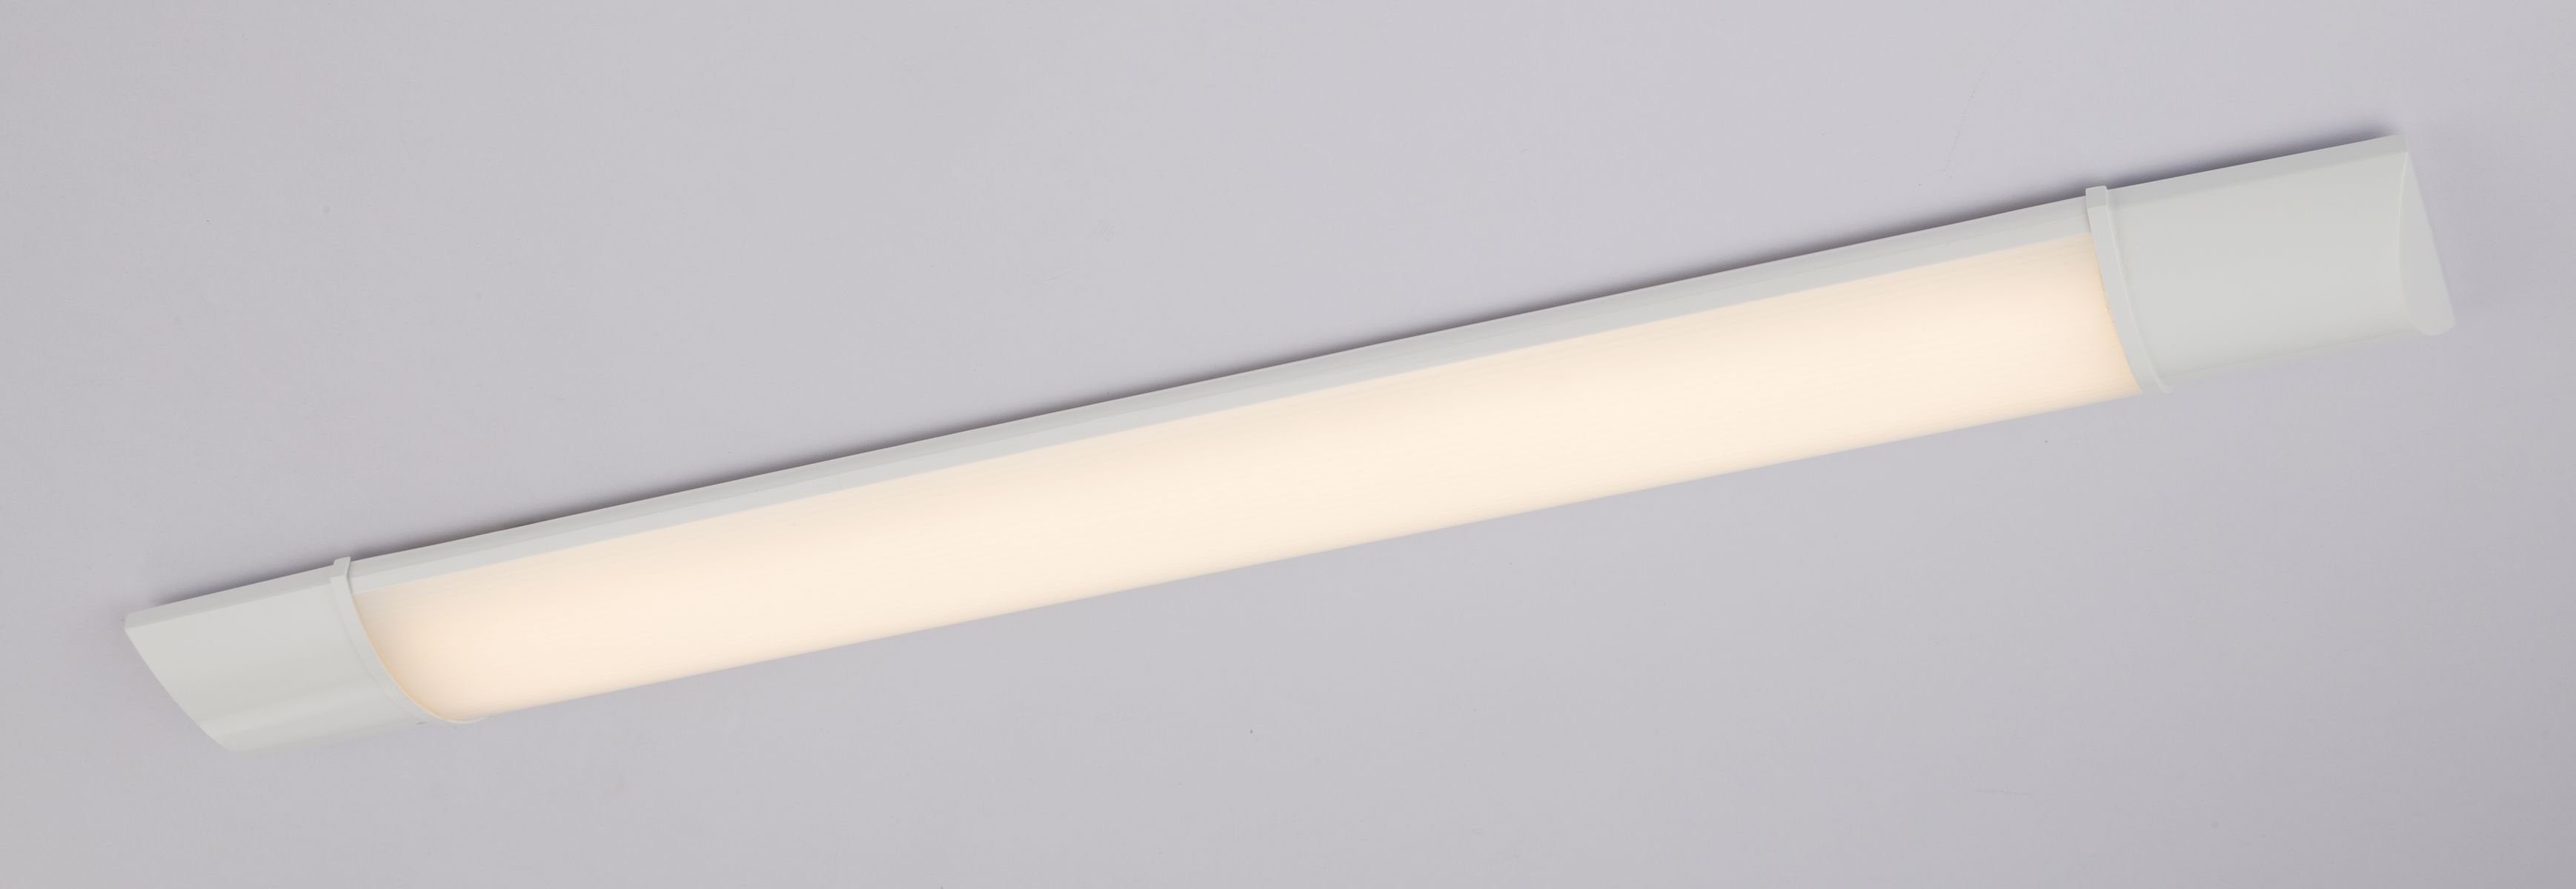 LED GLOBO Unterbaulampe warmweiß Globo Unterbauleuchte Küche Deckenleuchte flach